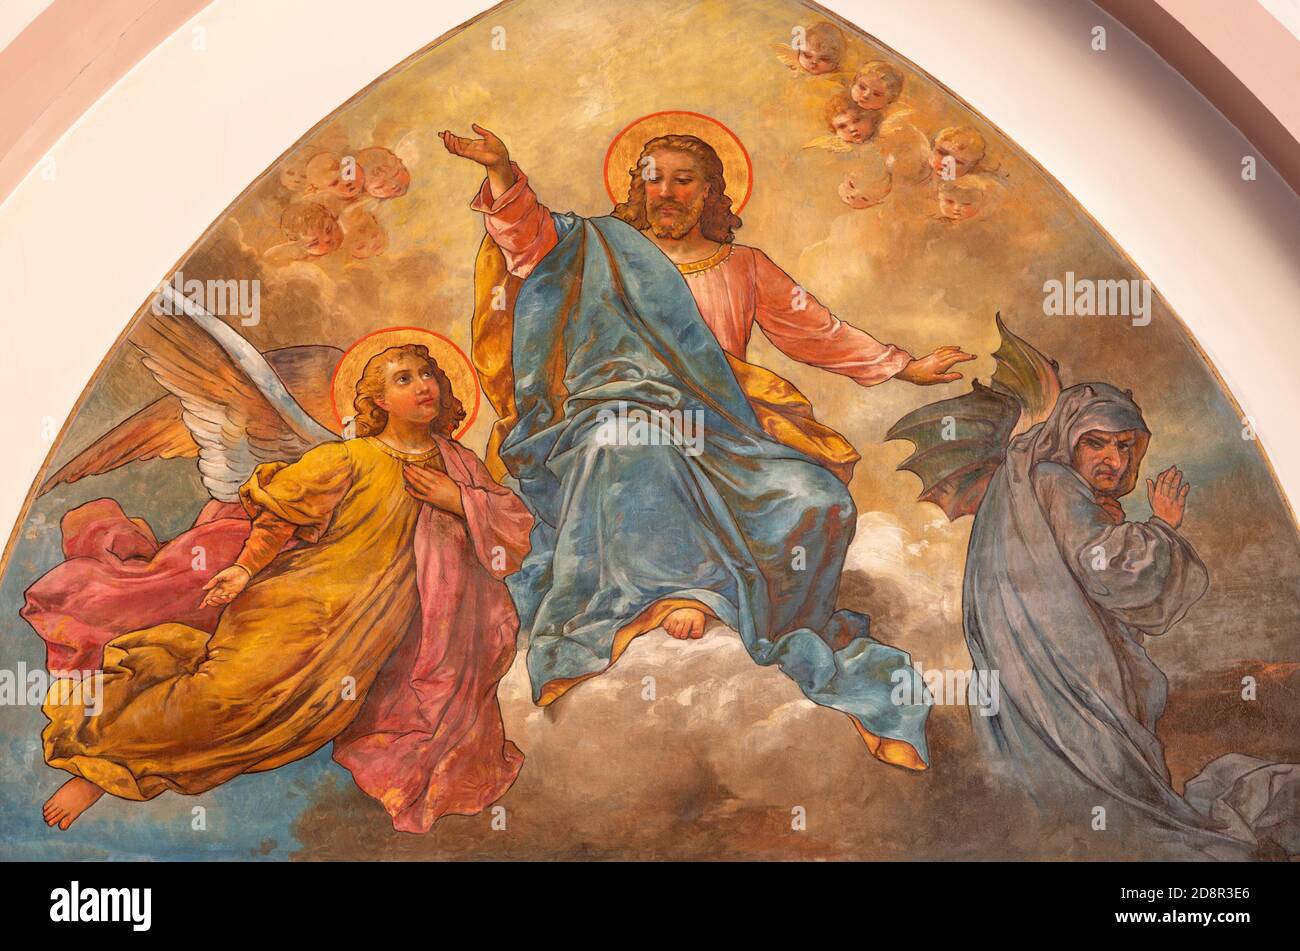 WIEN, AUSTIRA - 22. OKTOBER 2020: Fresko der Versuchung Jesu auf dem Berg in der Kirche Laurentiuskirche von Hans Zacka Ende 19. Jh. Stockfoto